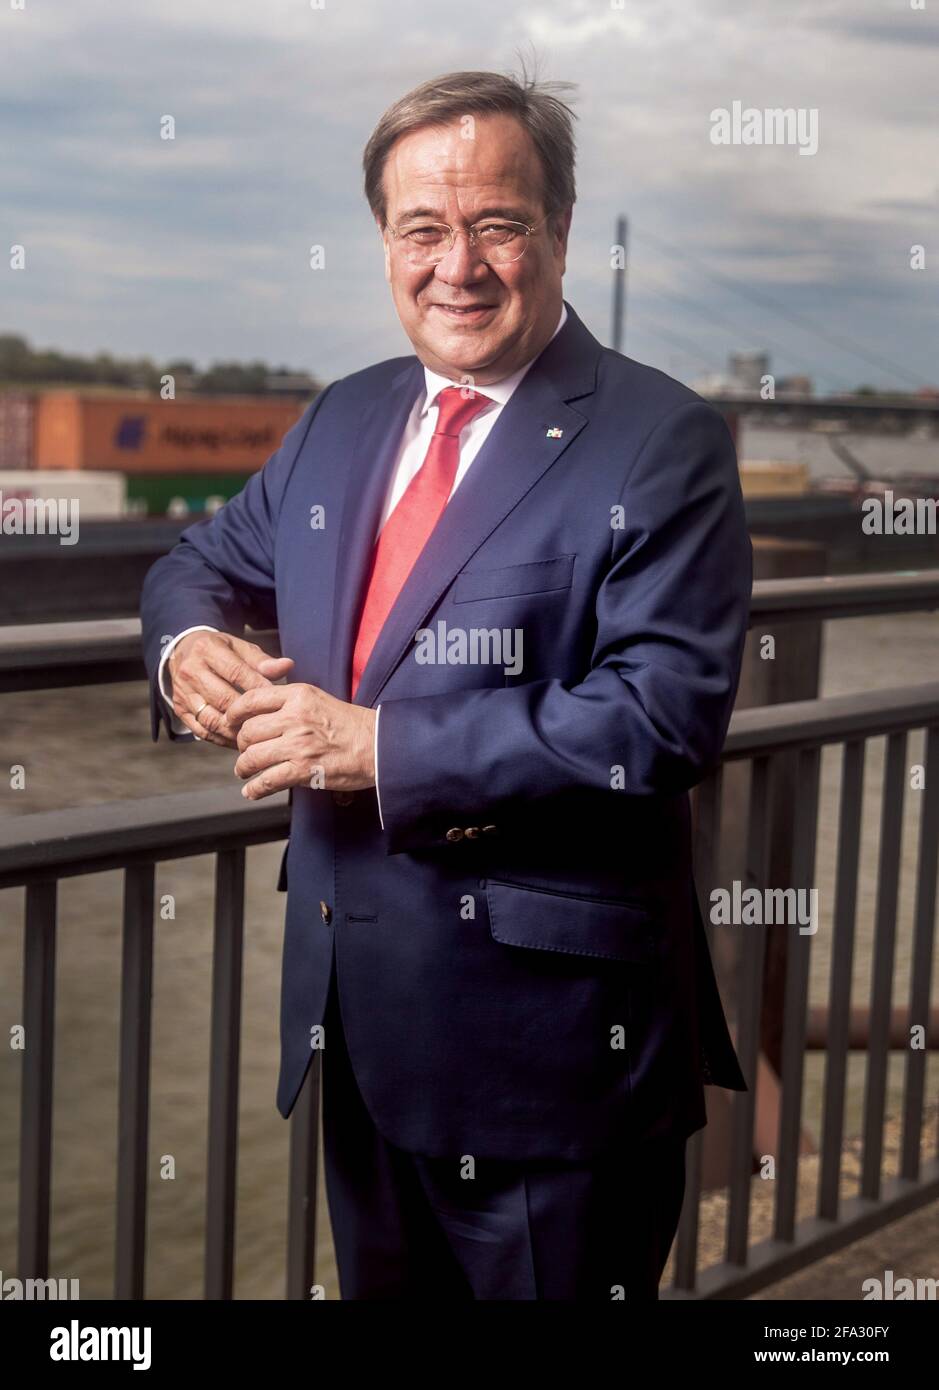 Ministerpräsident des Landes Nordrhein-Westfalen, Armin Laschet, fotografiert am Rhein in Düsseldorf. Stock Photo